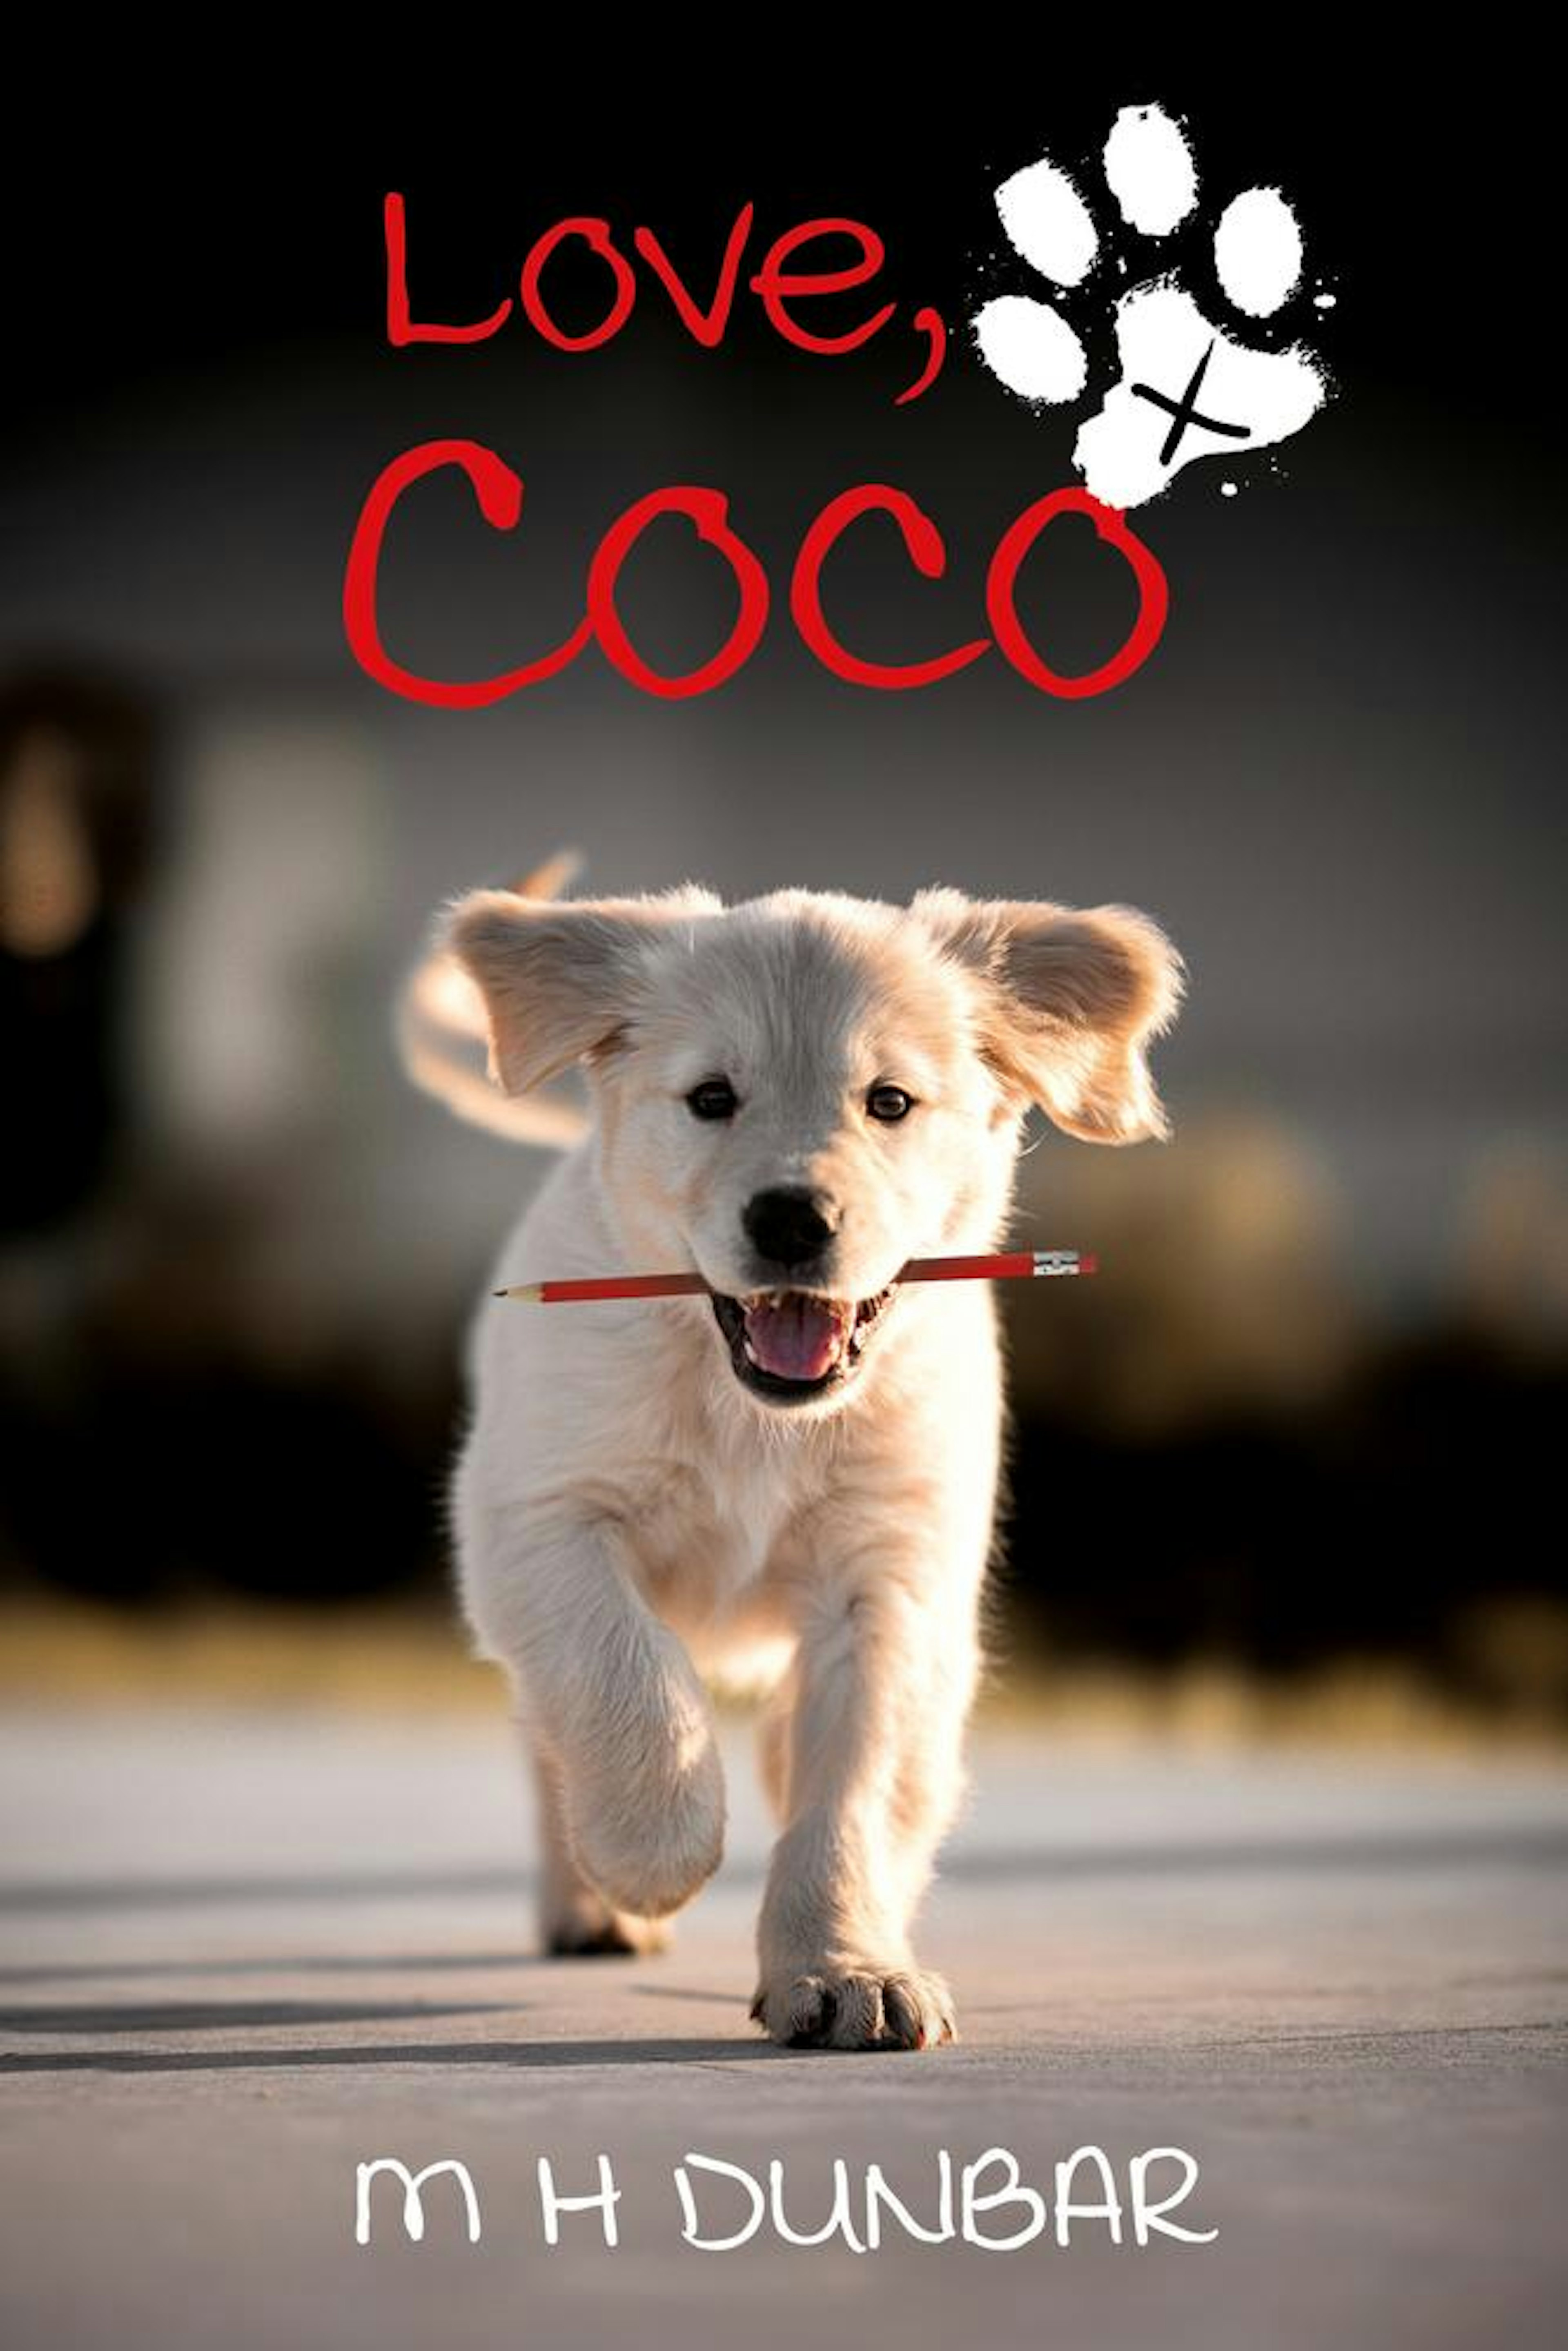 Love, Coco x